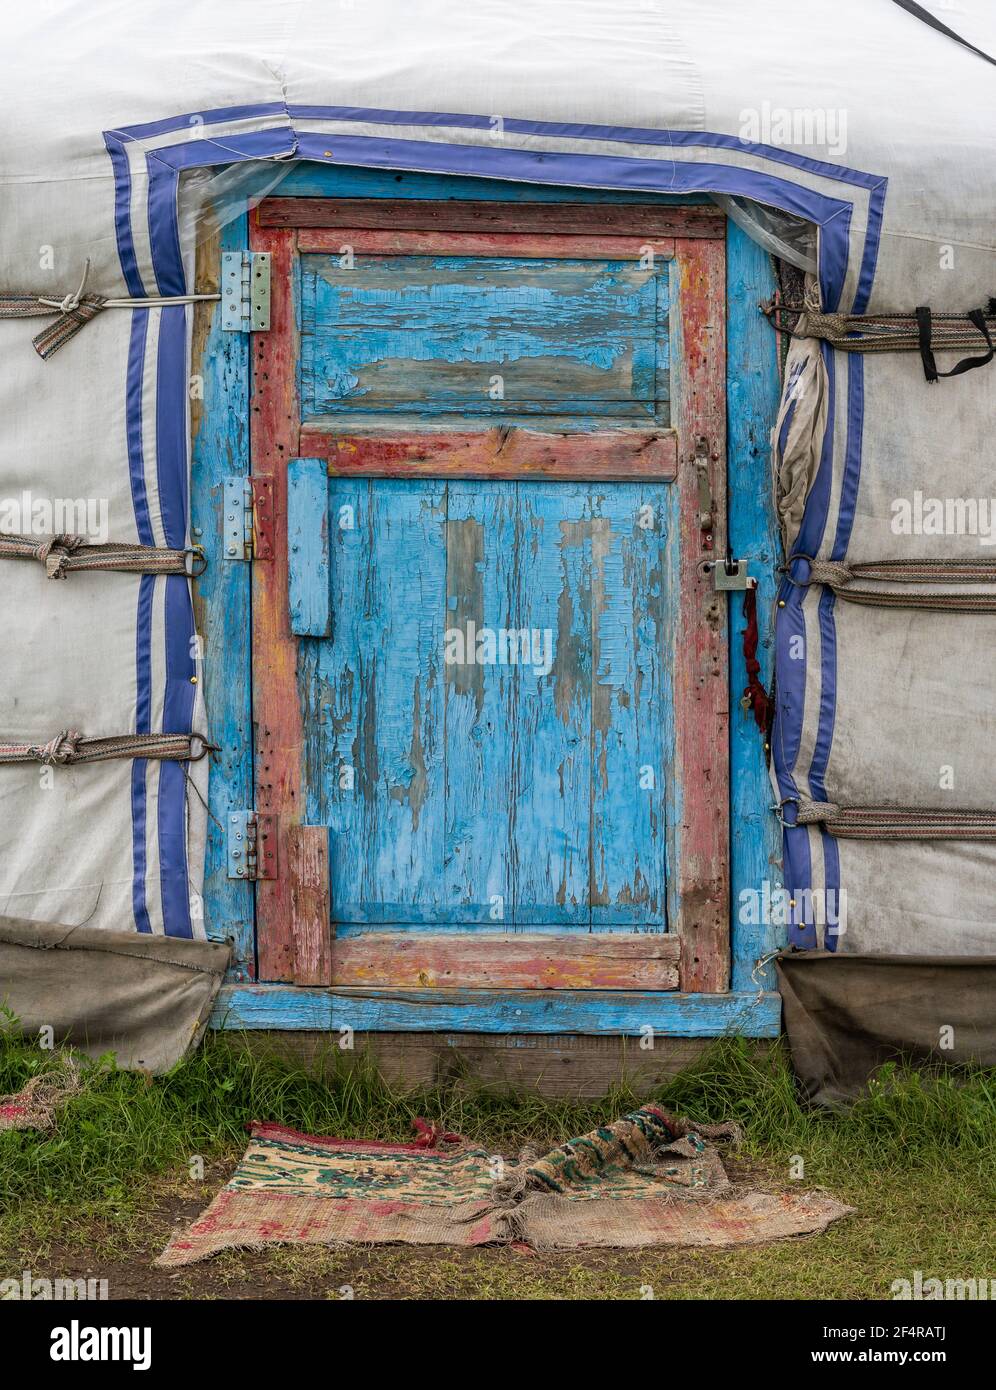 Baruunburen Sum, Mongolei - 19. August 2019: Blaue und rote Tür der Jurte oder Gers, Zelt, in der Mongolei. Stockfoto